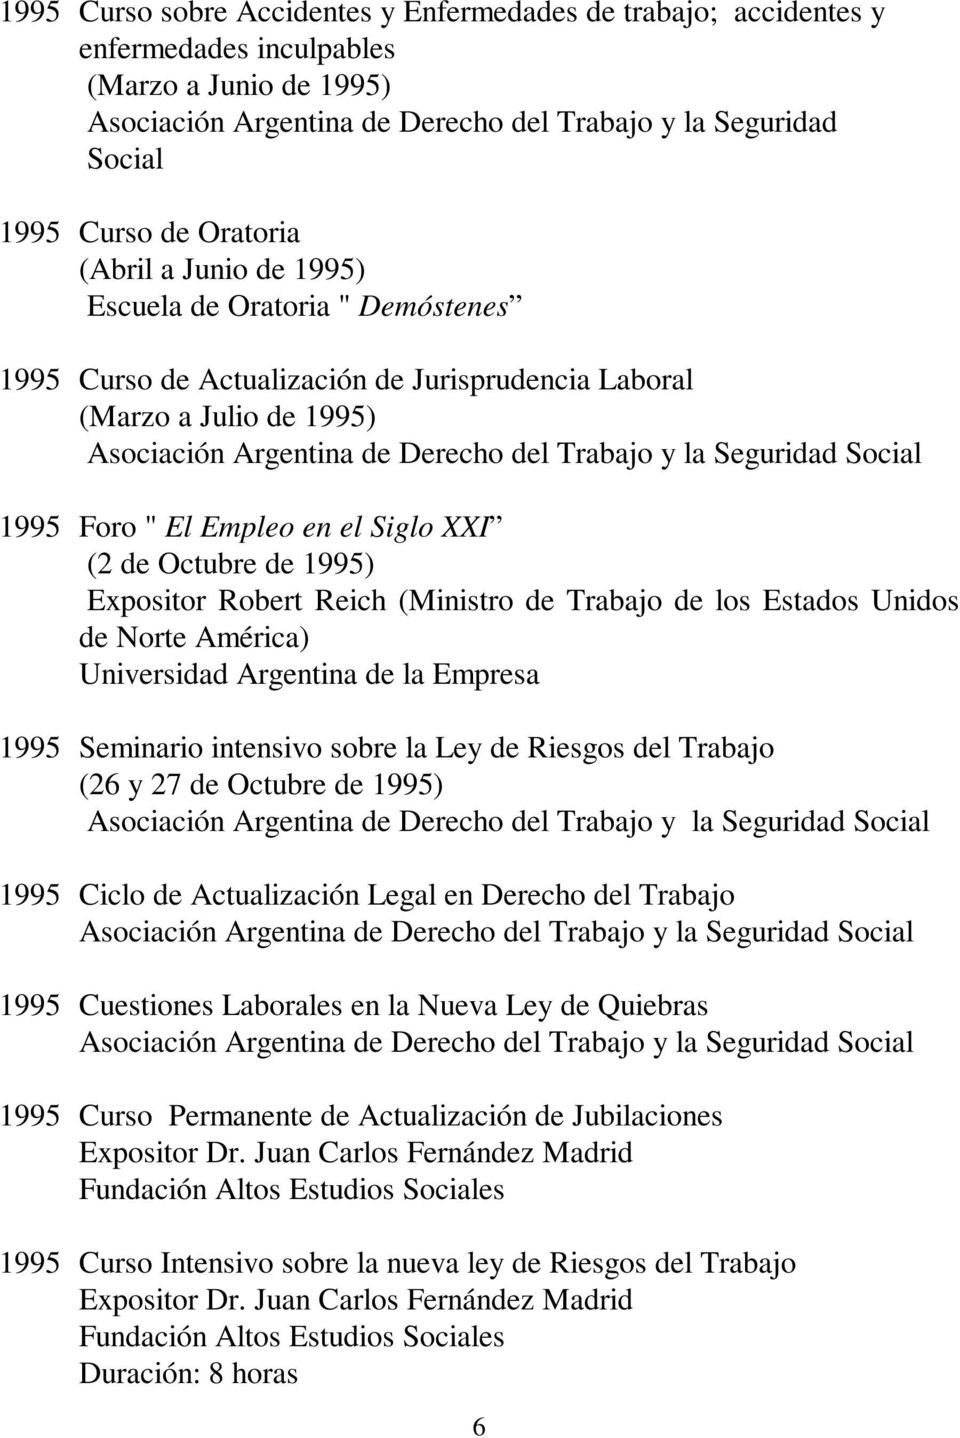 Seguridad Social 1995 Foro " El Empleo en el Siglo XXI (2 de Octubre de 1995) Expositor Robert Reich (Ministro de Trabajo de los Estados Unidos de Norte América) Universidad Argentina de la Empresa